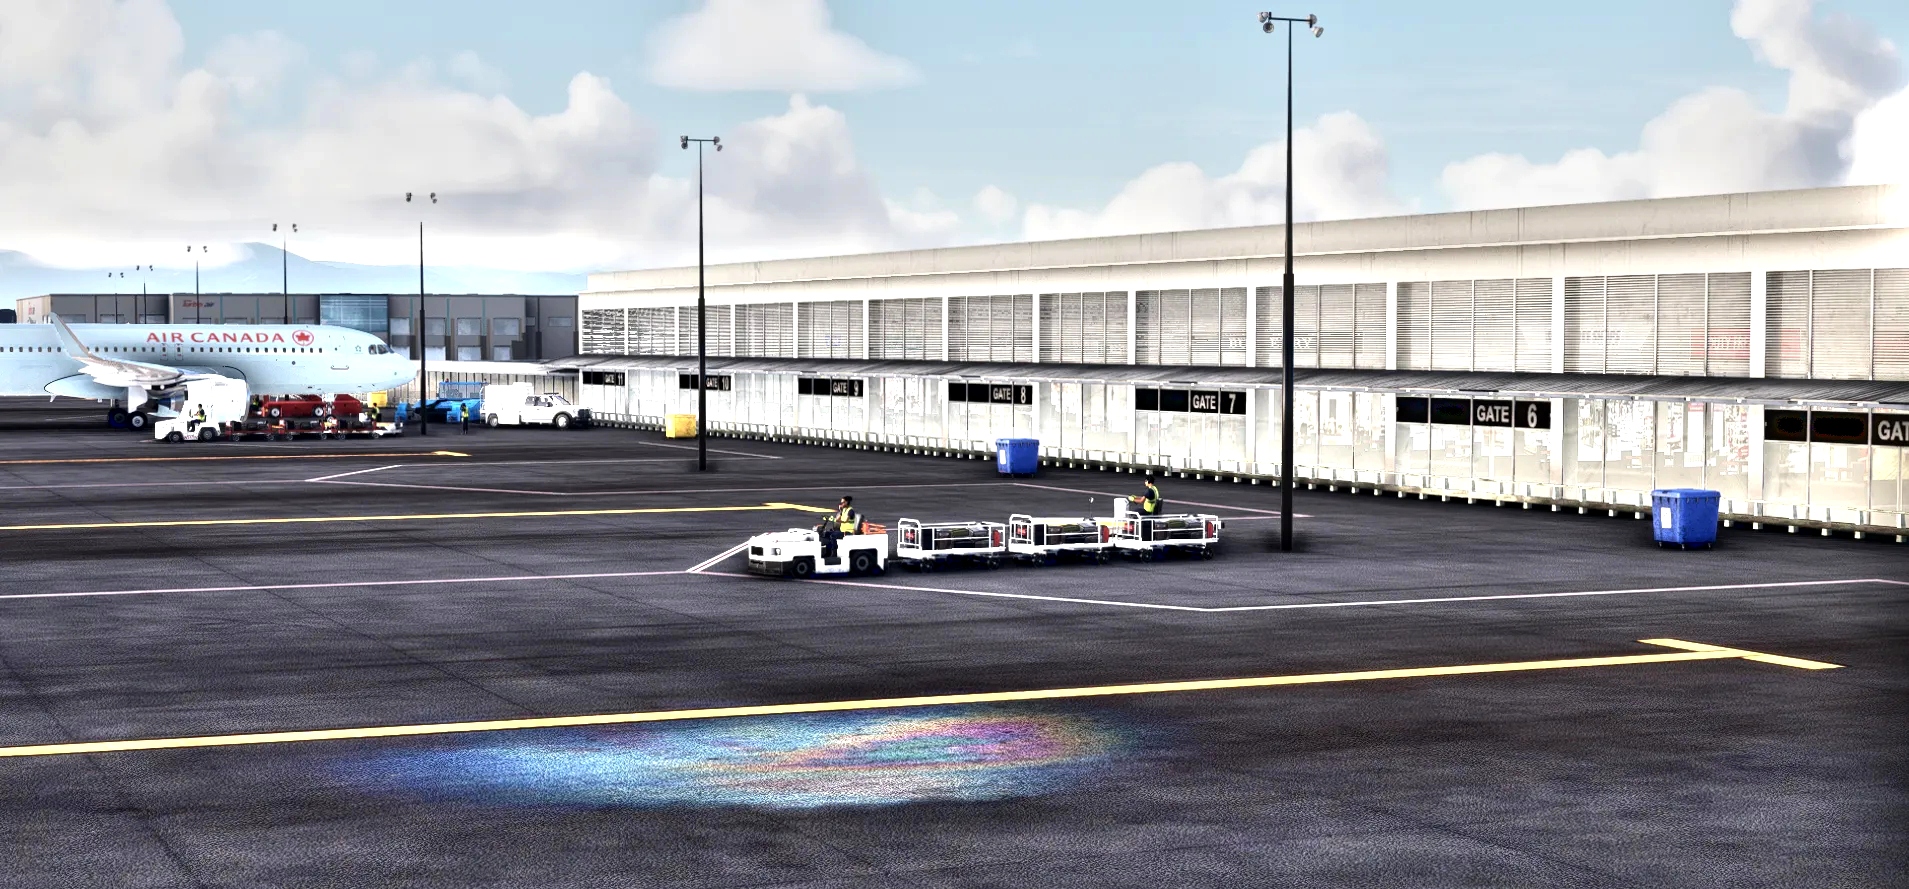 KLGB - Long Beach Airport Microsoft Flight Simulator